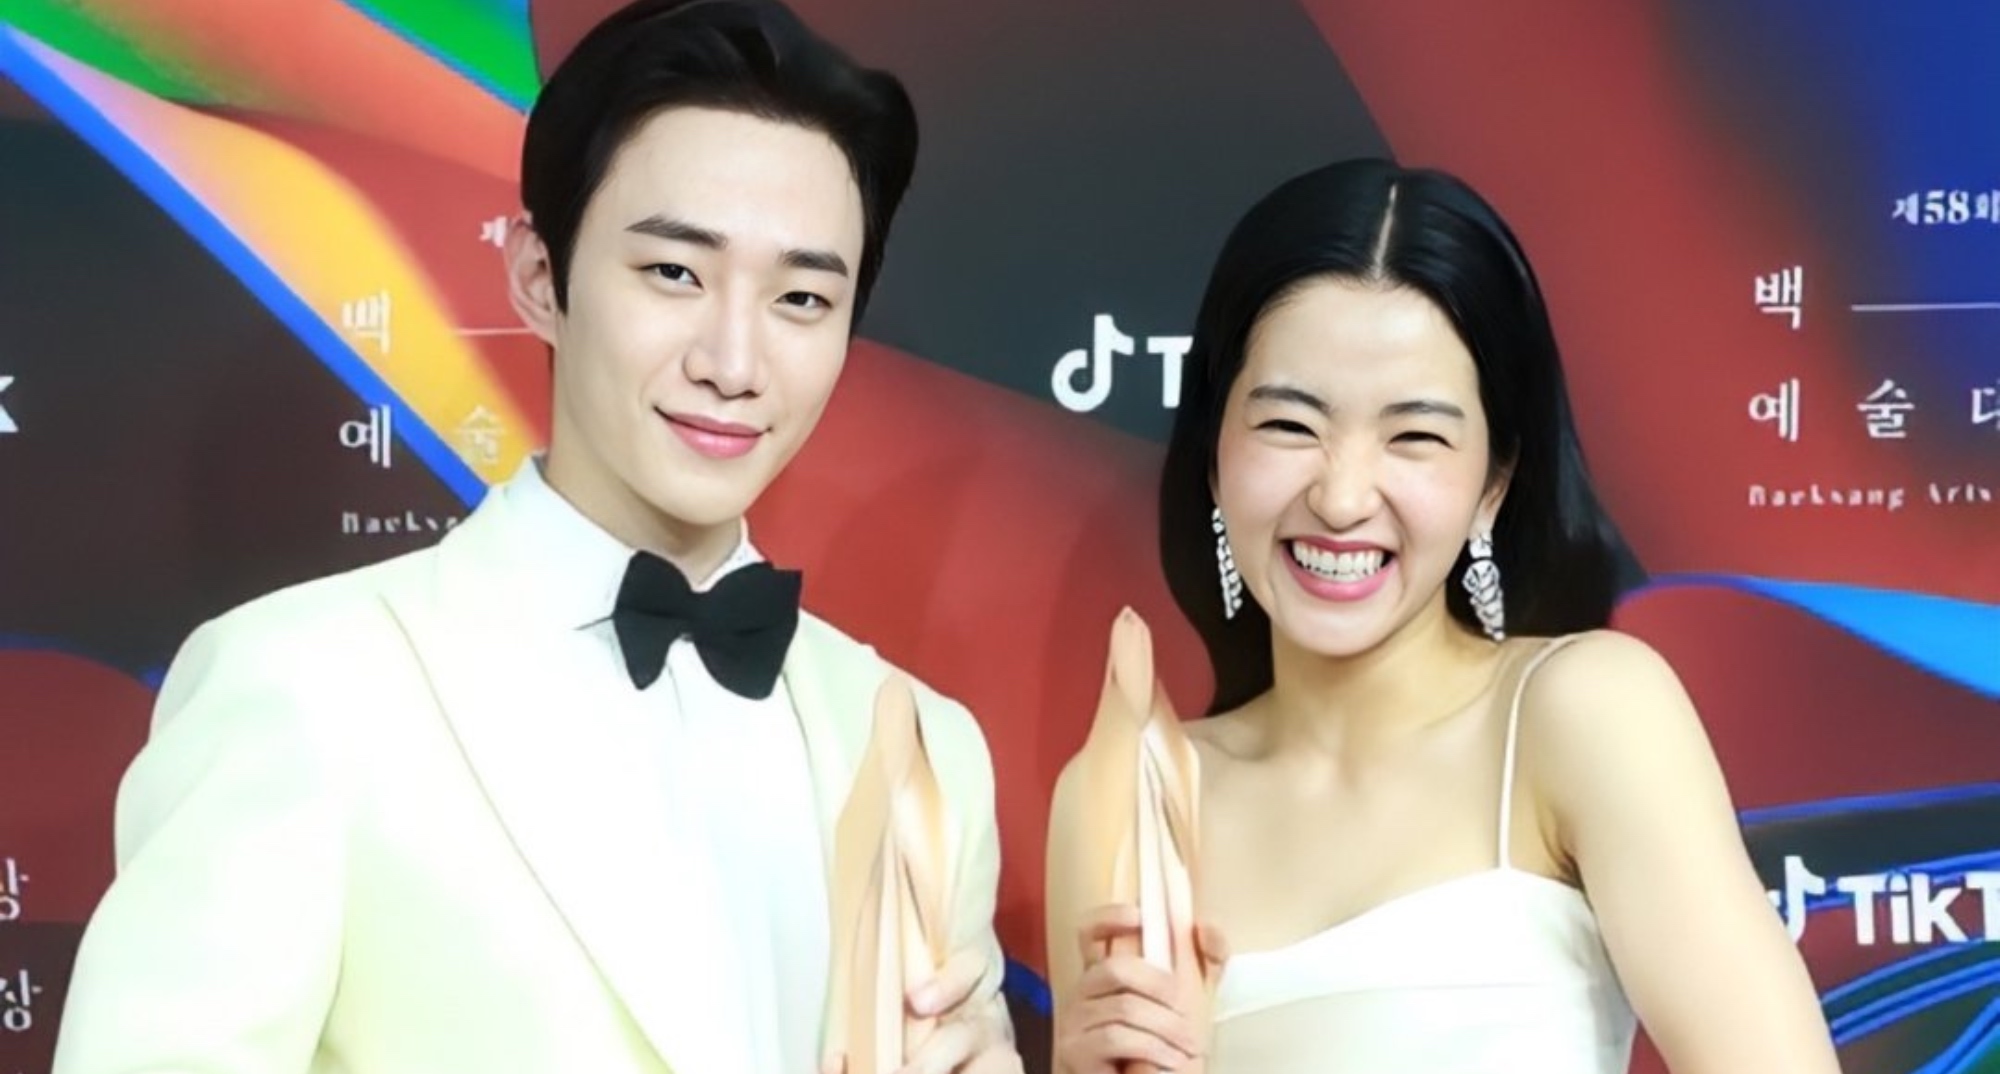 Lee Junho and Kim Tae-ri at the 58th Baeksang Awards holding trophies